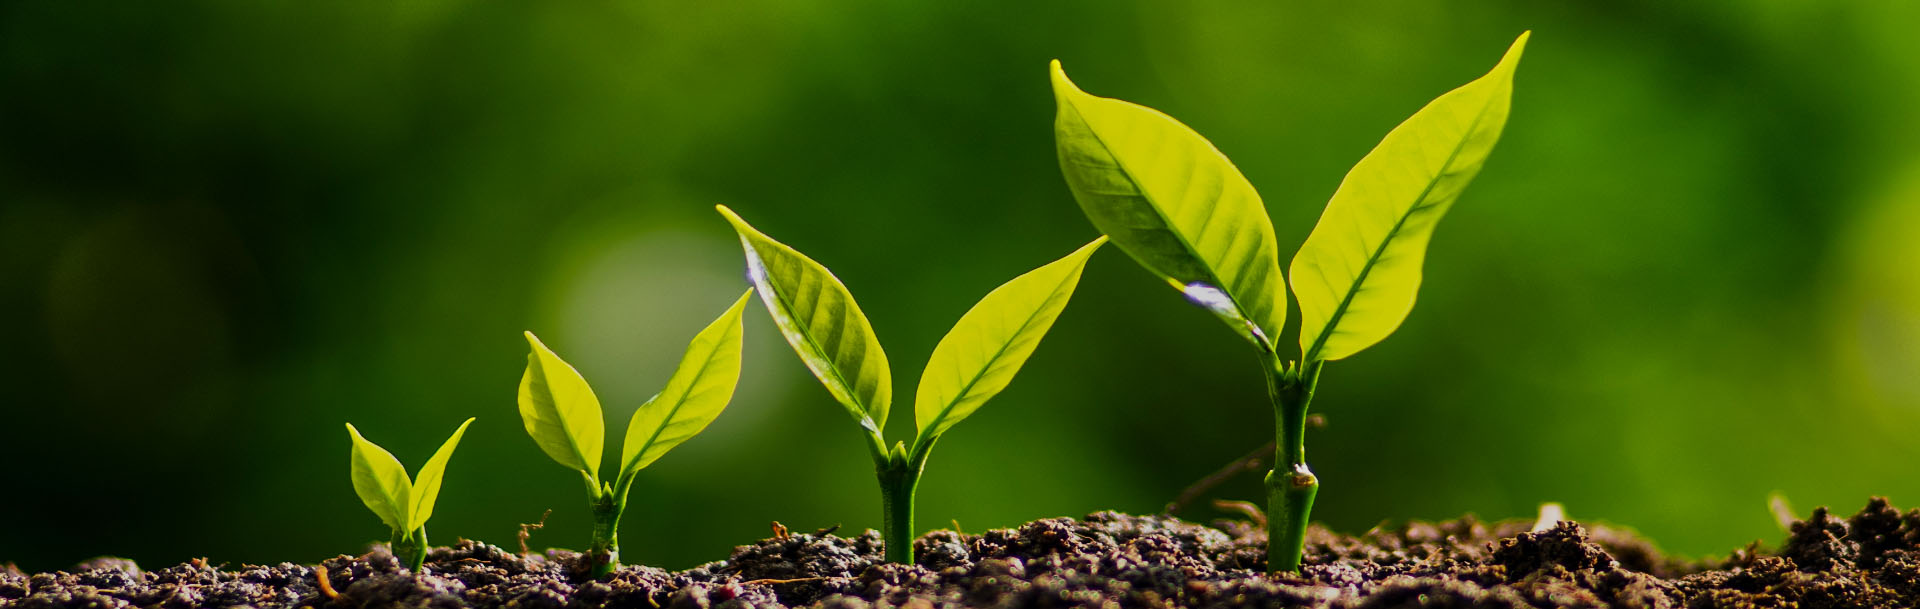 vier Pflanzen mit grünen Blättern in verschiedenen Wachstumsstadien wachsen auf feuchter Erde und strahlen im Licht